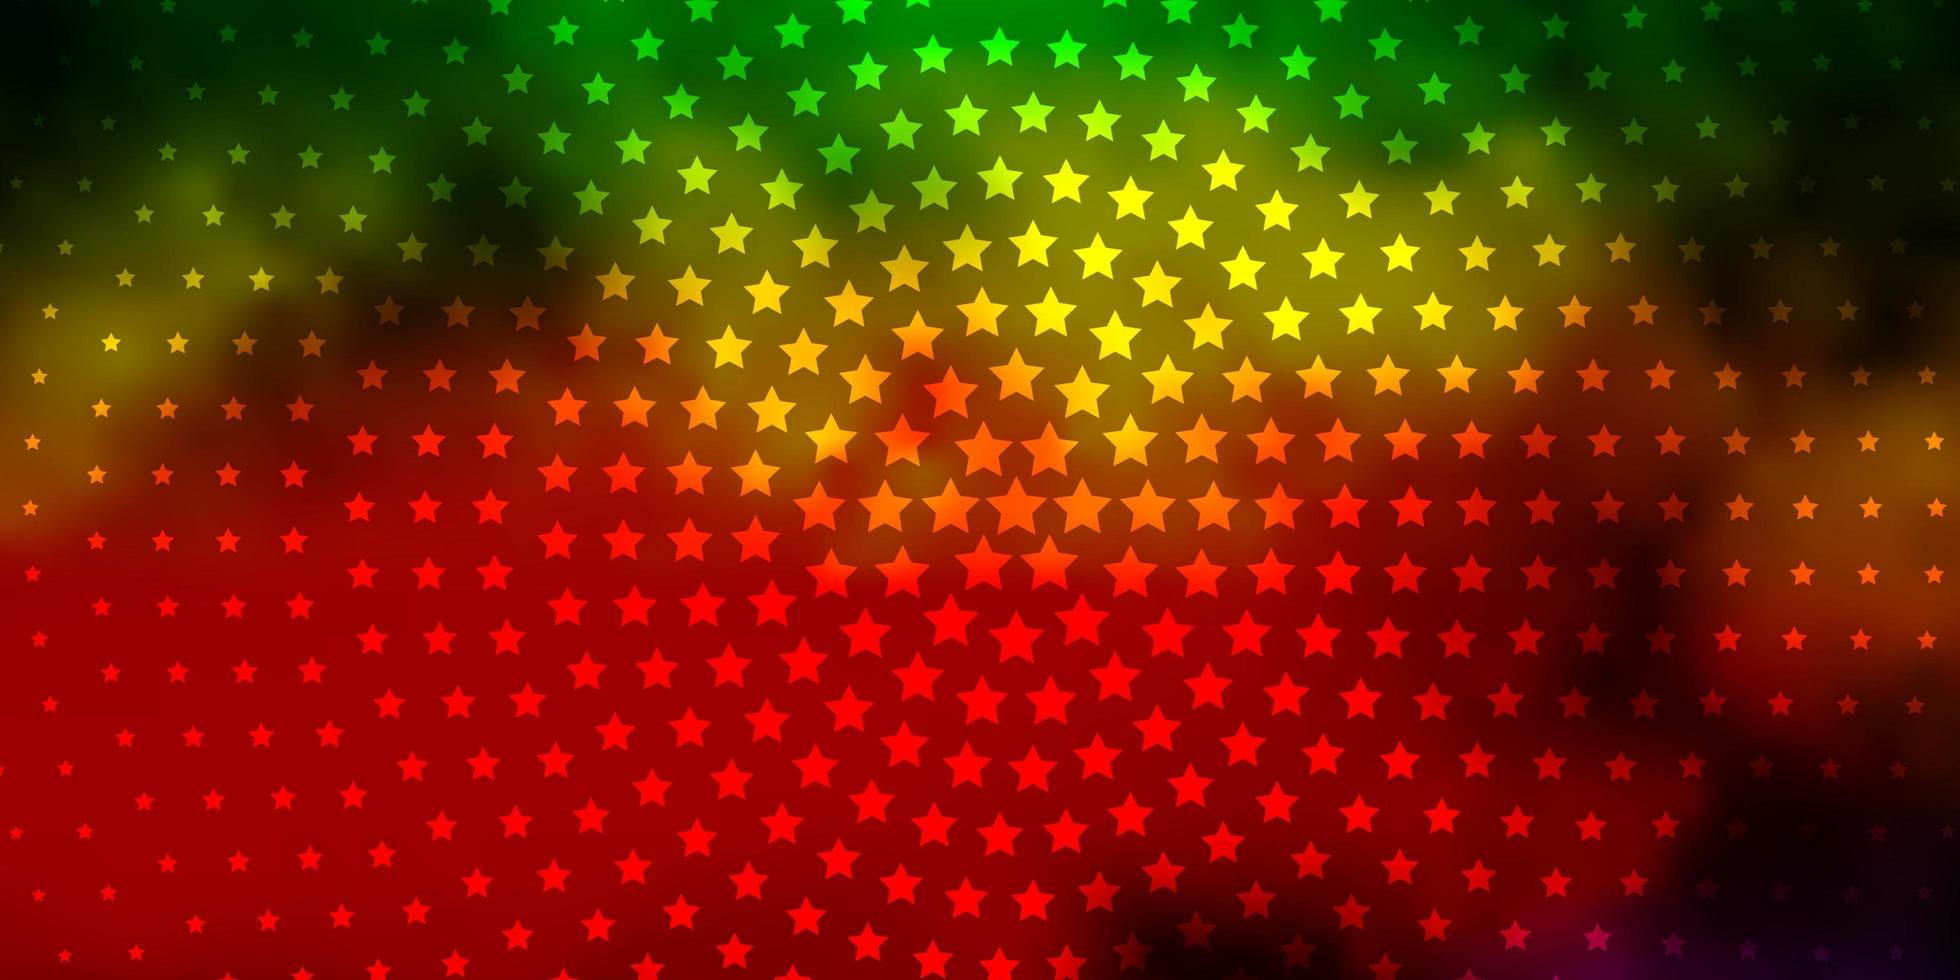 dunkle mehrfarbige Vektorschablone mit Neonsternen. vektor